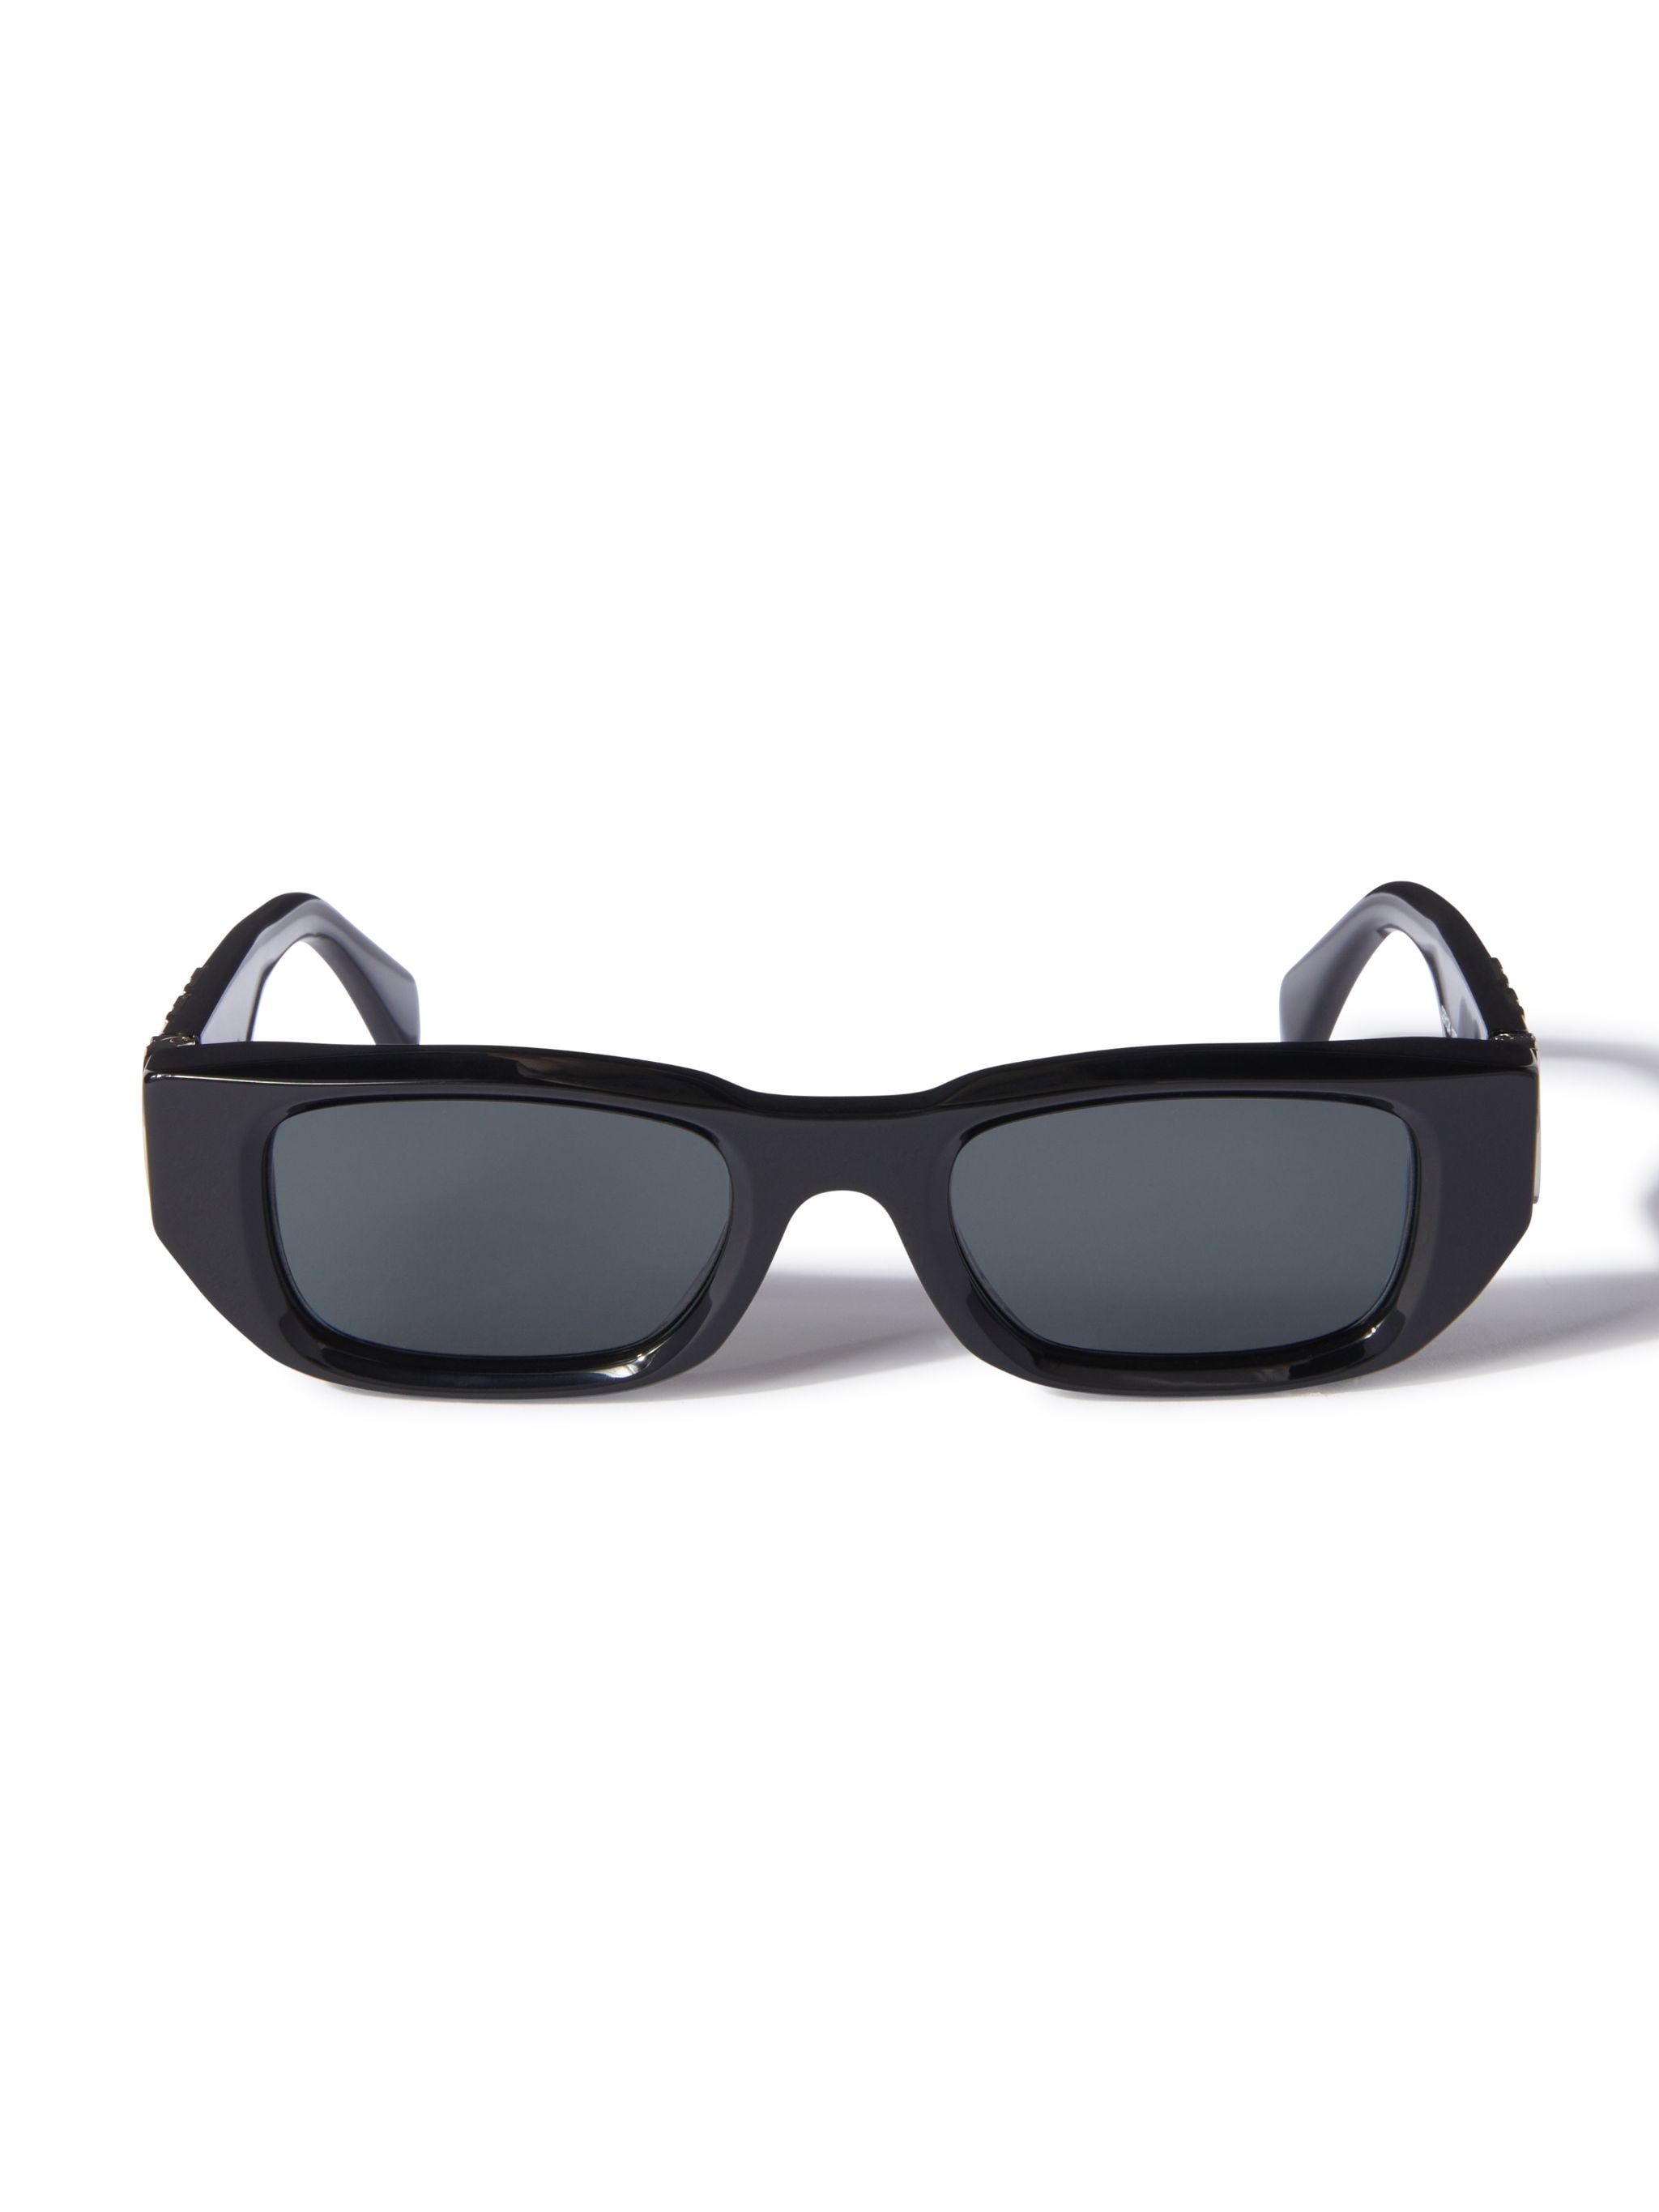 Fillmore Sunglasses - 1